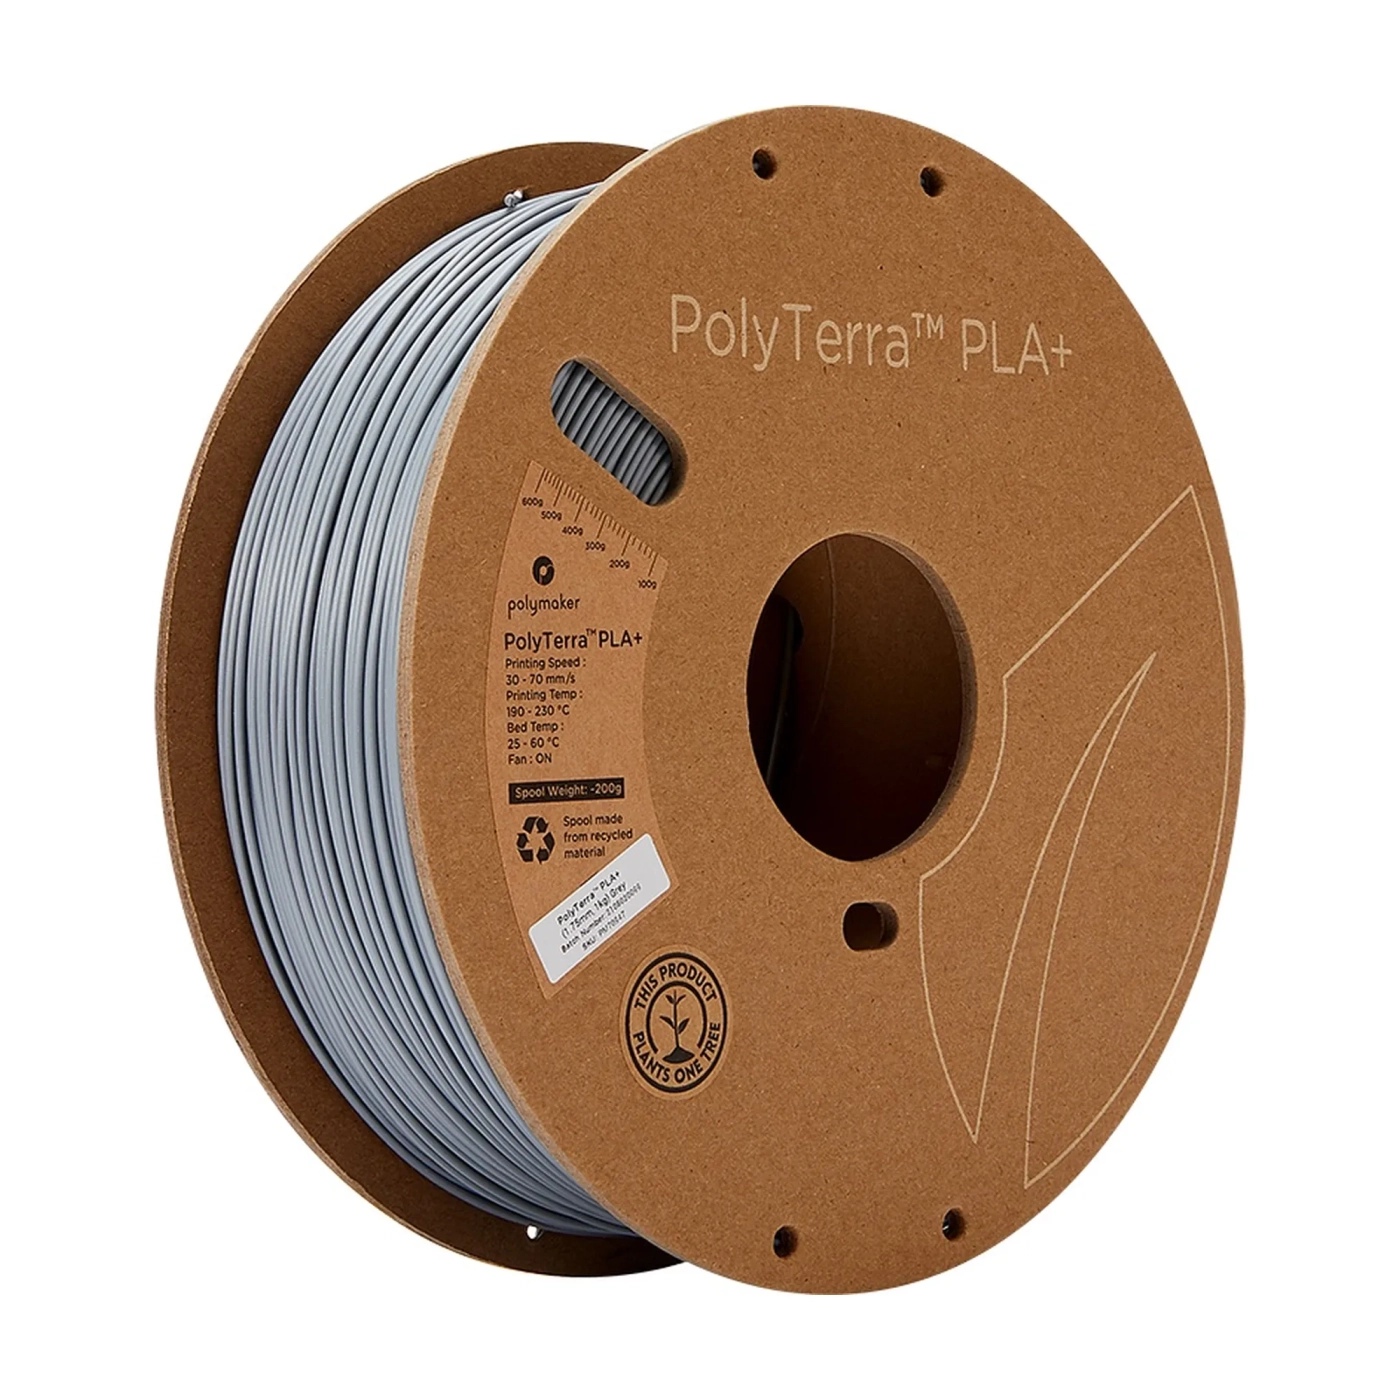 Купить PolyTerra PLA Plus Filament для 3D принтера Polymaker 1кг, 1.75мм, серый - фото 1